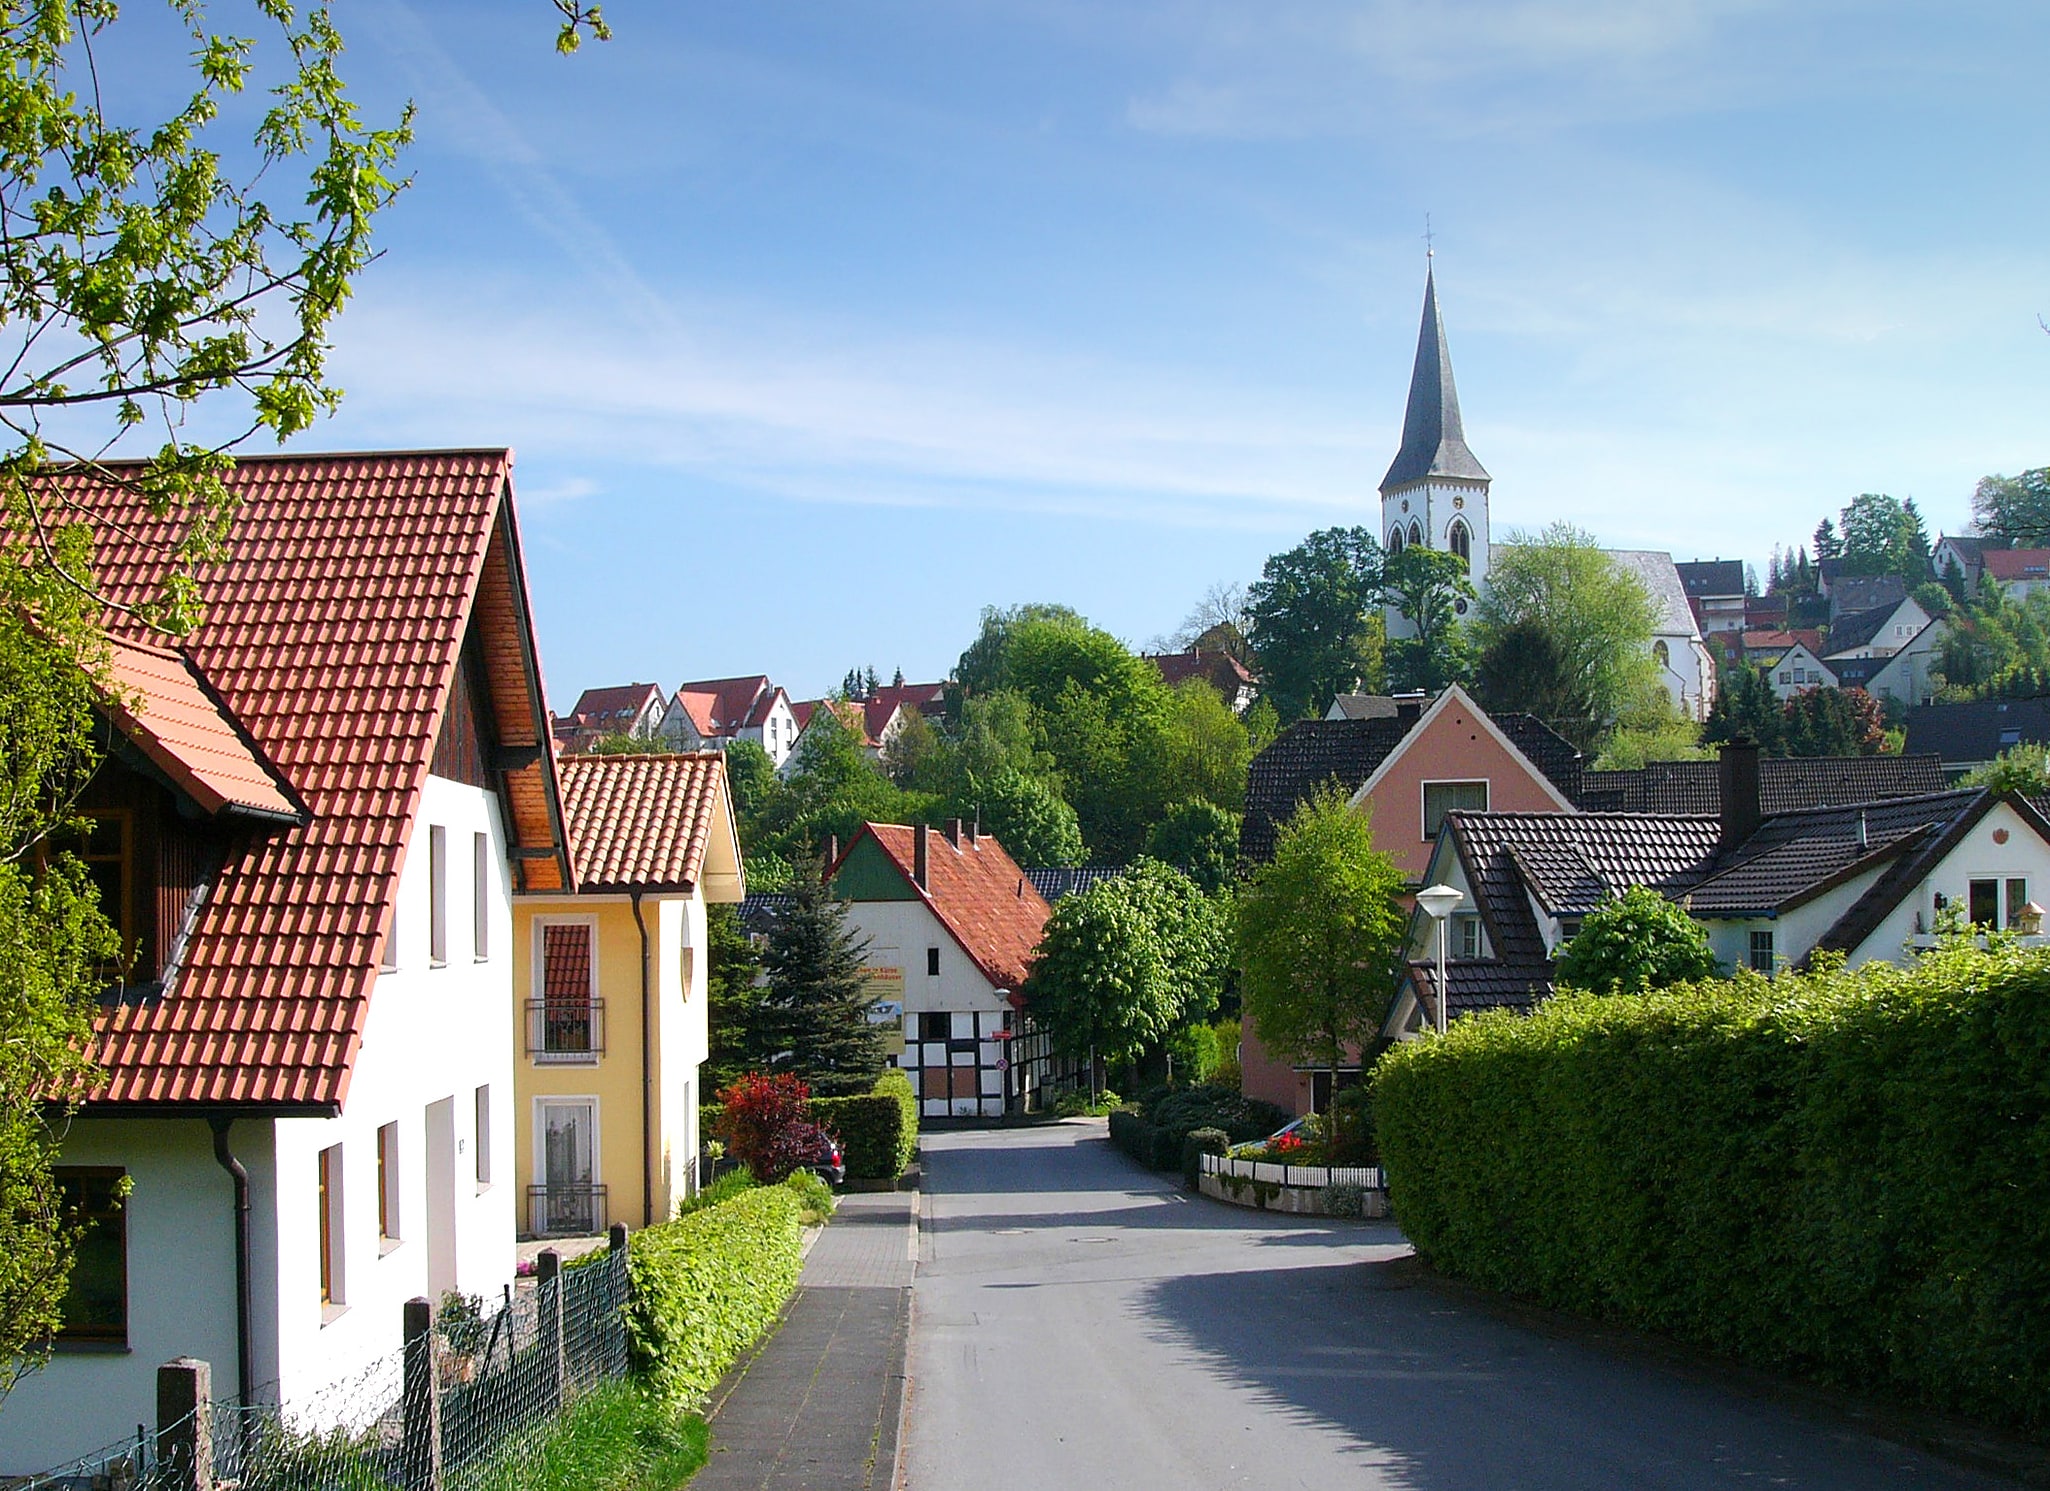 Oerlinghausen, Germany